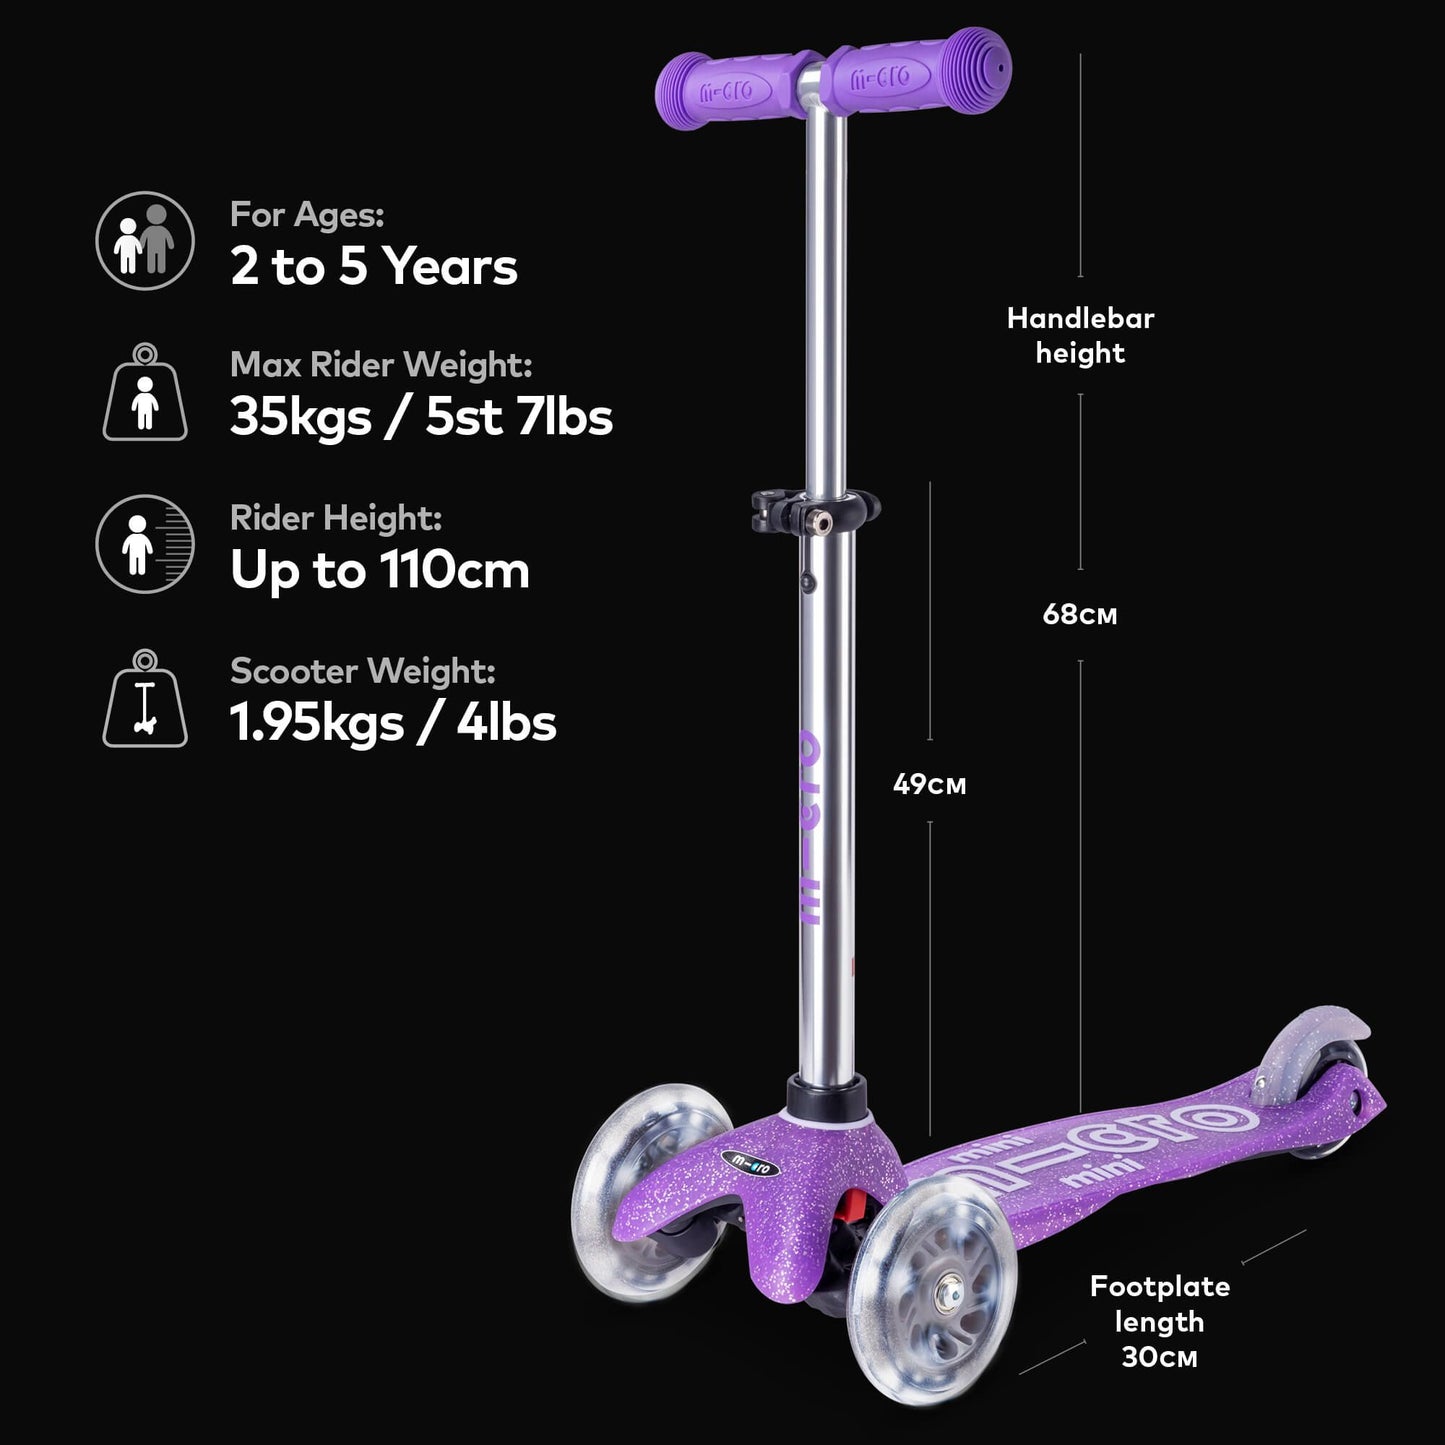 Micro Scooter Mini Glitter - Purple